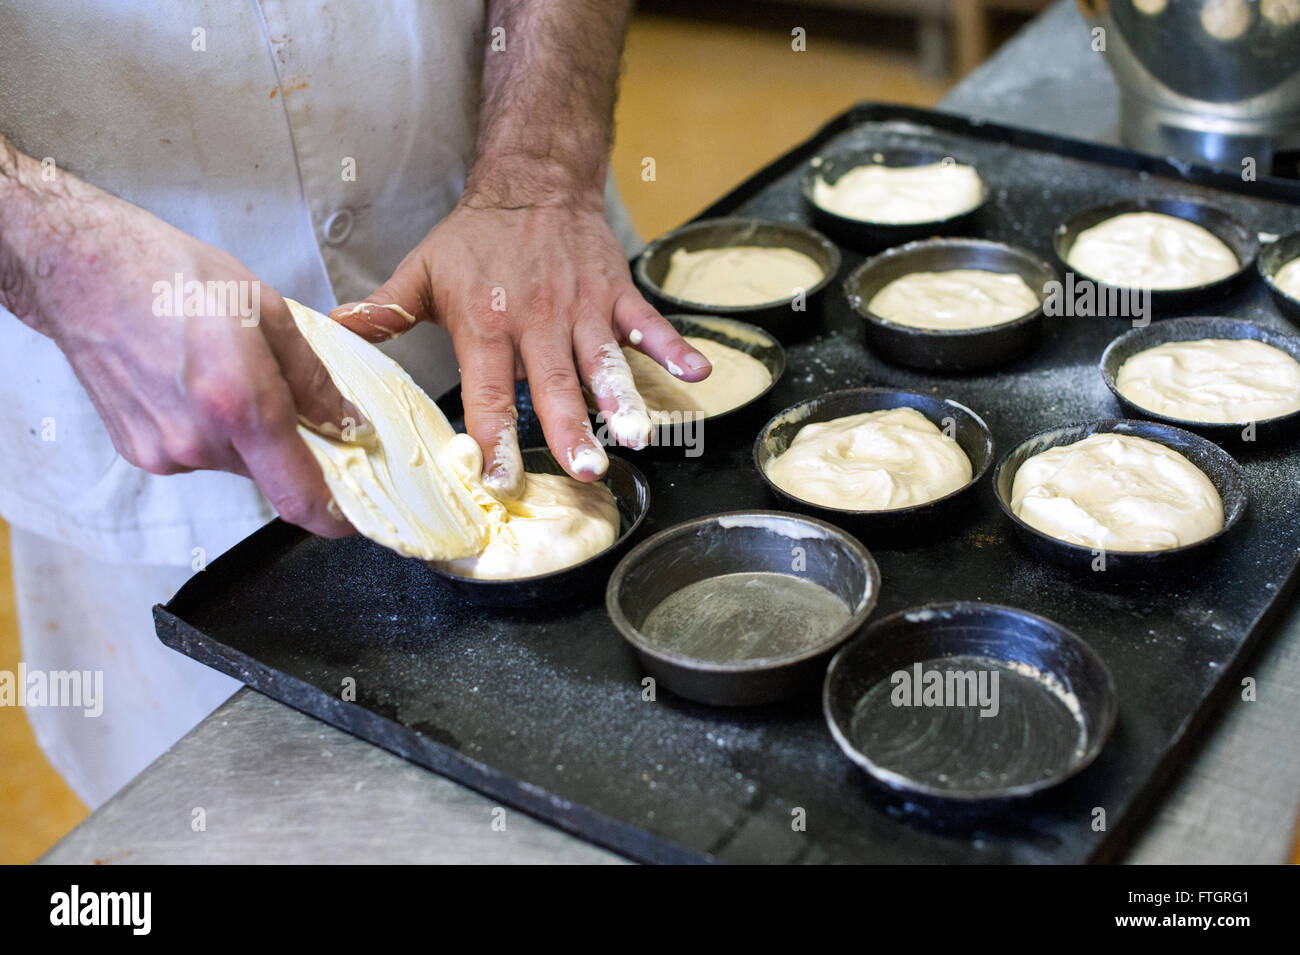 Baker en una panadería repostería horno metal llenado de latas en una bandeja para hornear con masa cruda , cerca de sus manos Foto de stock